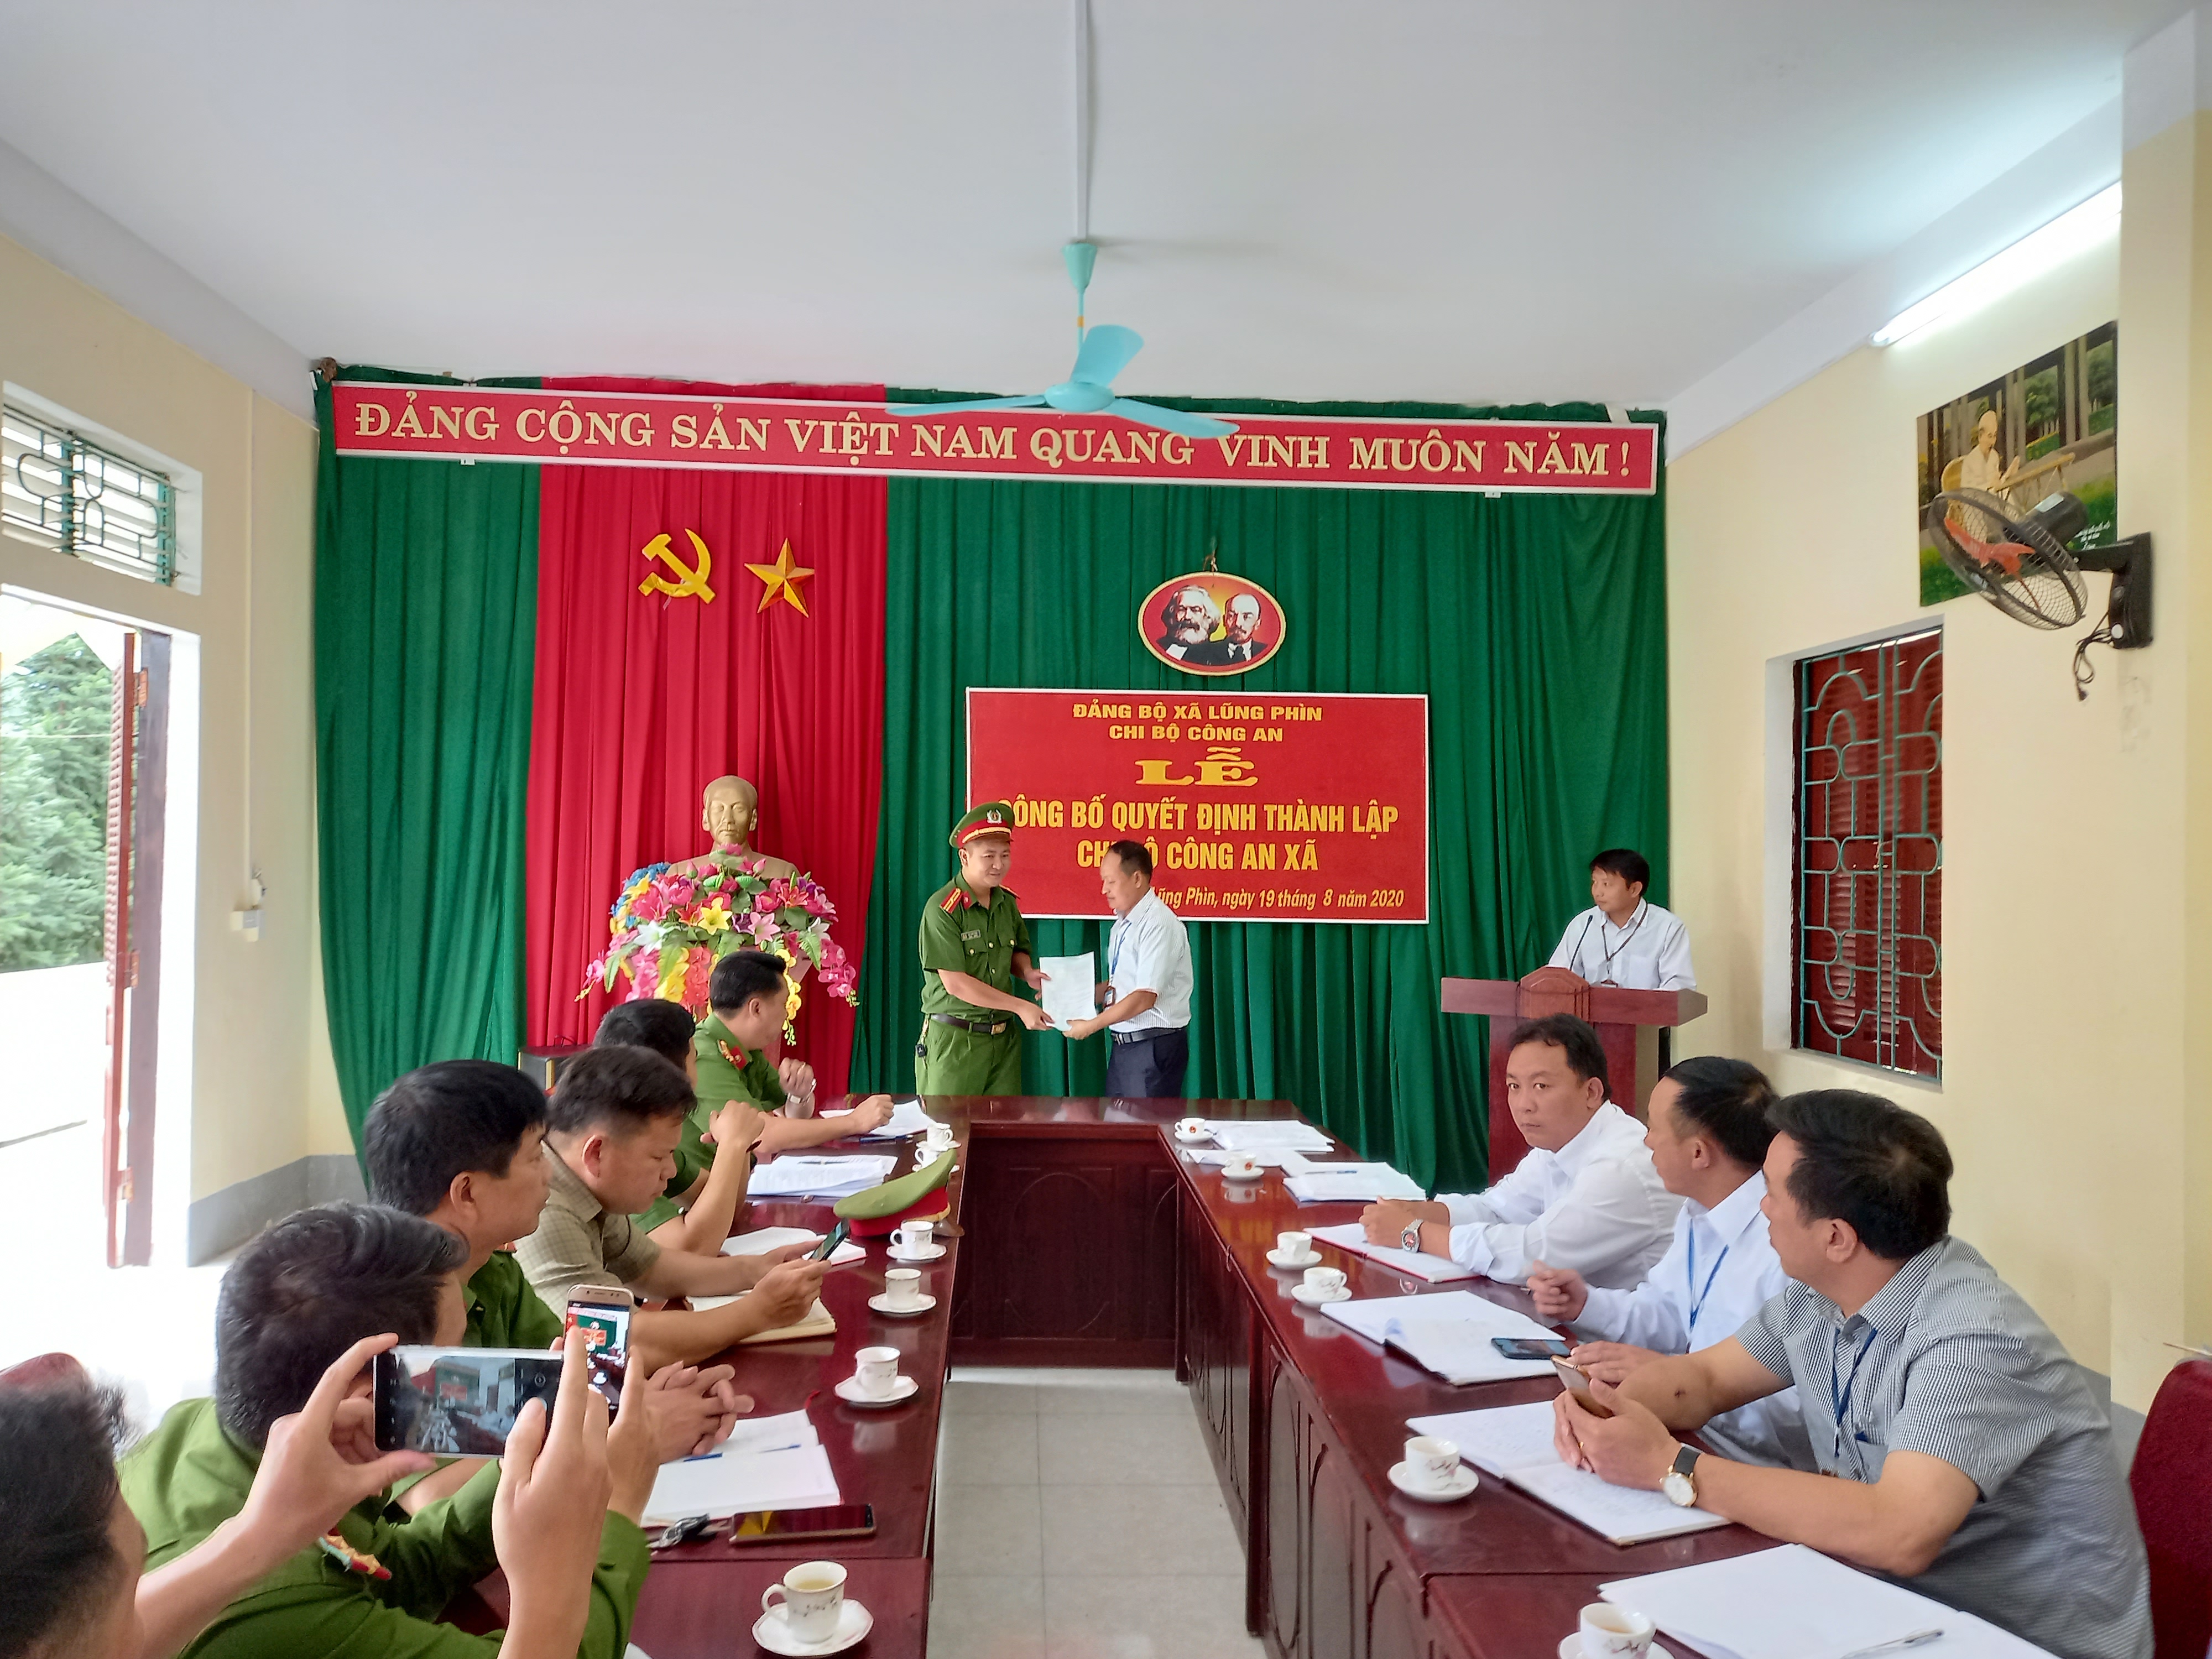 Đảng ủy xã Lũng Phìn công bố Quyết định thành lập chi bộ công an xã